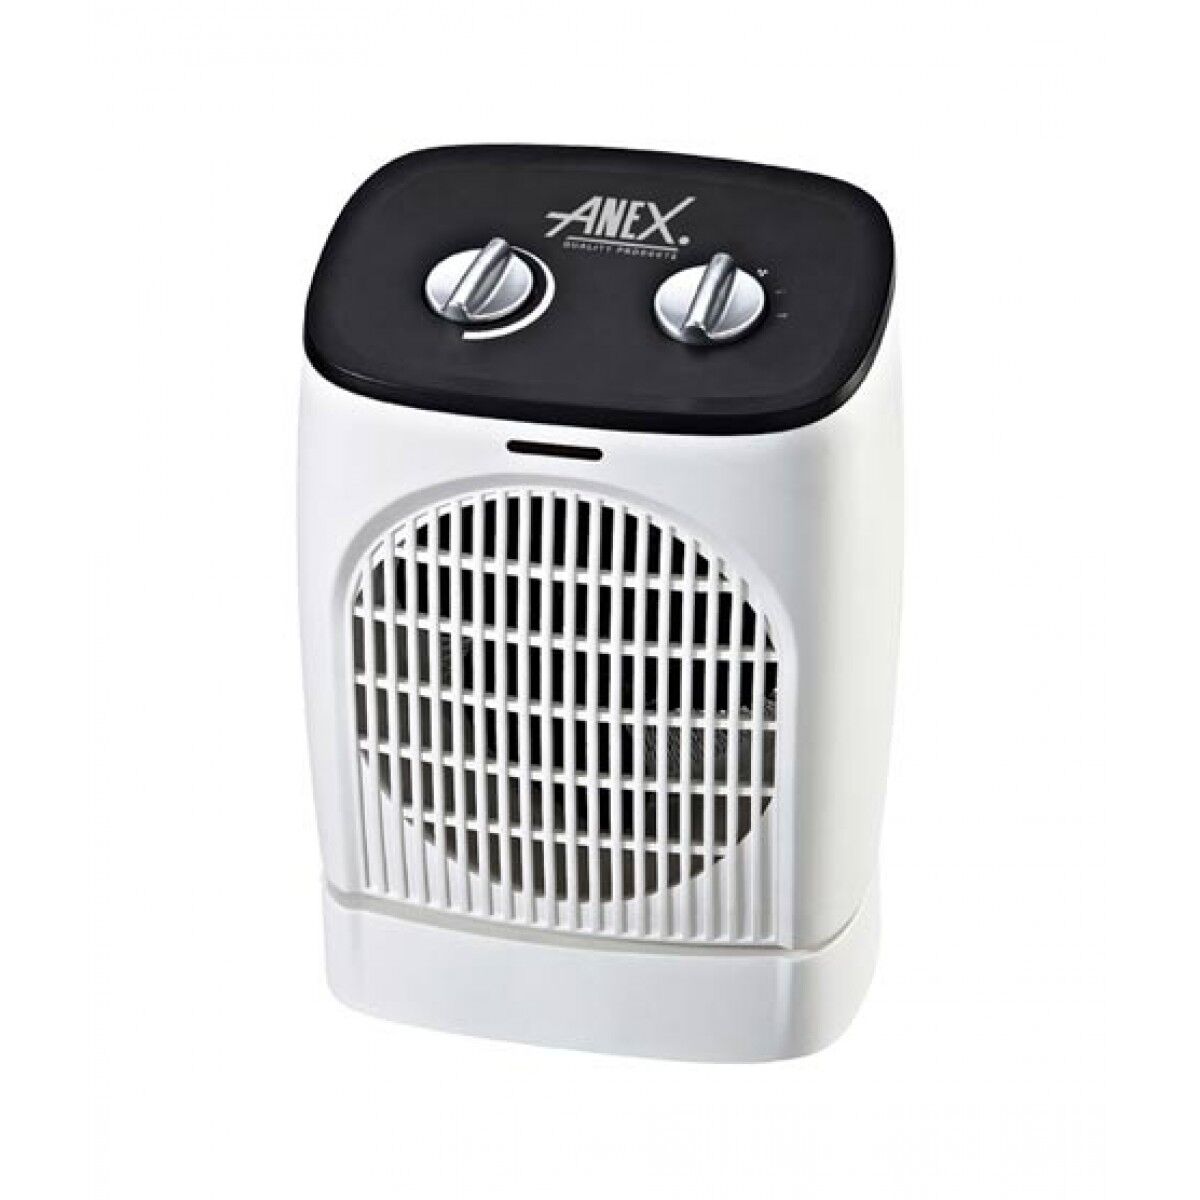 Anex Deluxe Fan Heater AG-5002